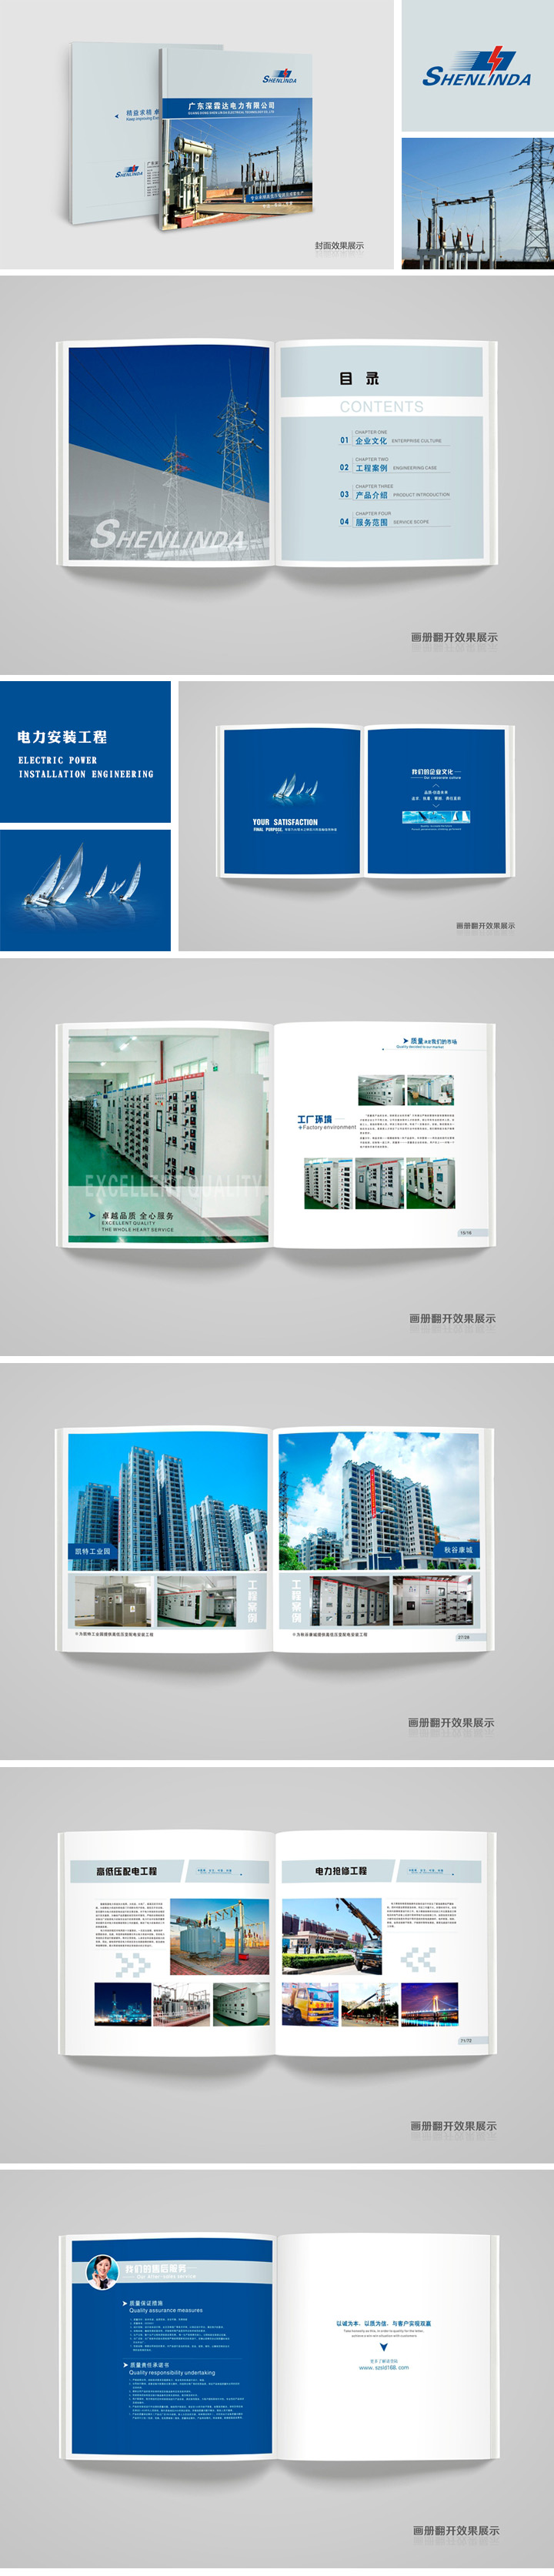 凯时网站·(中国)集团(欢迎您)_产品5294